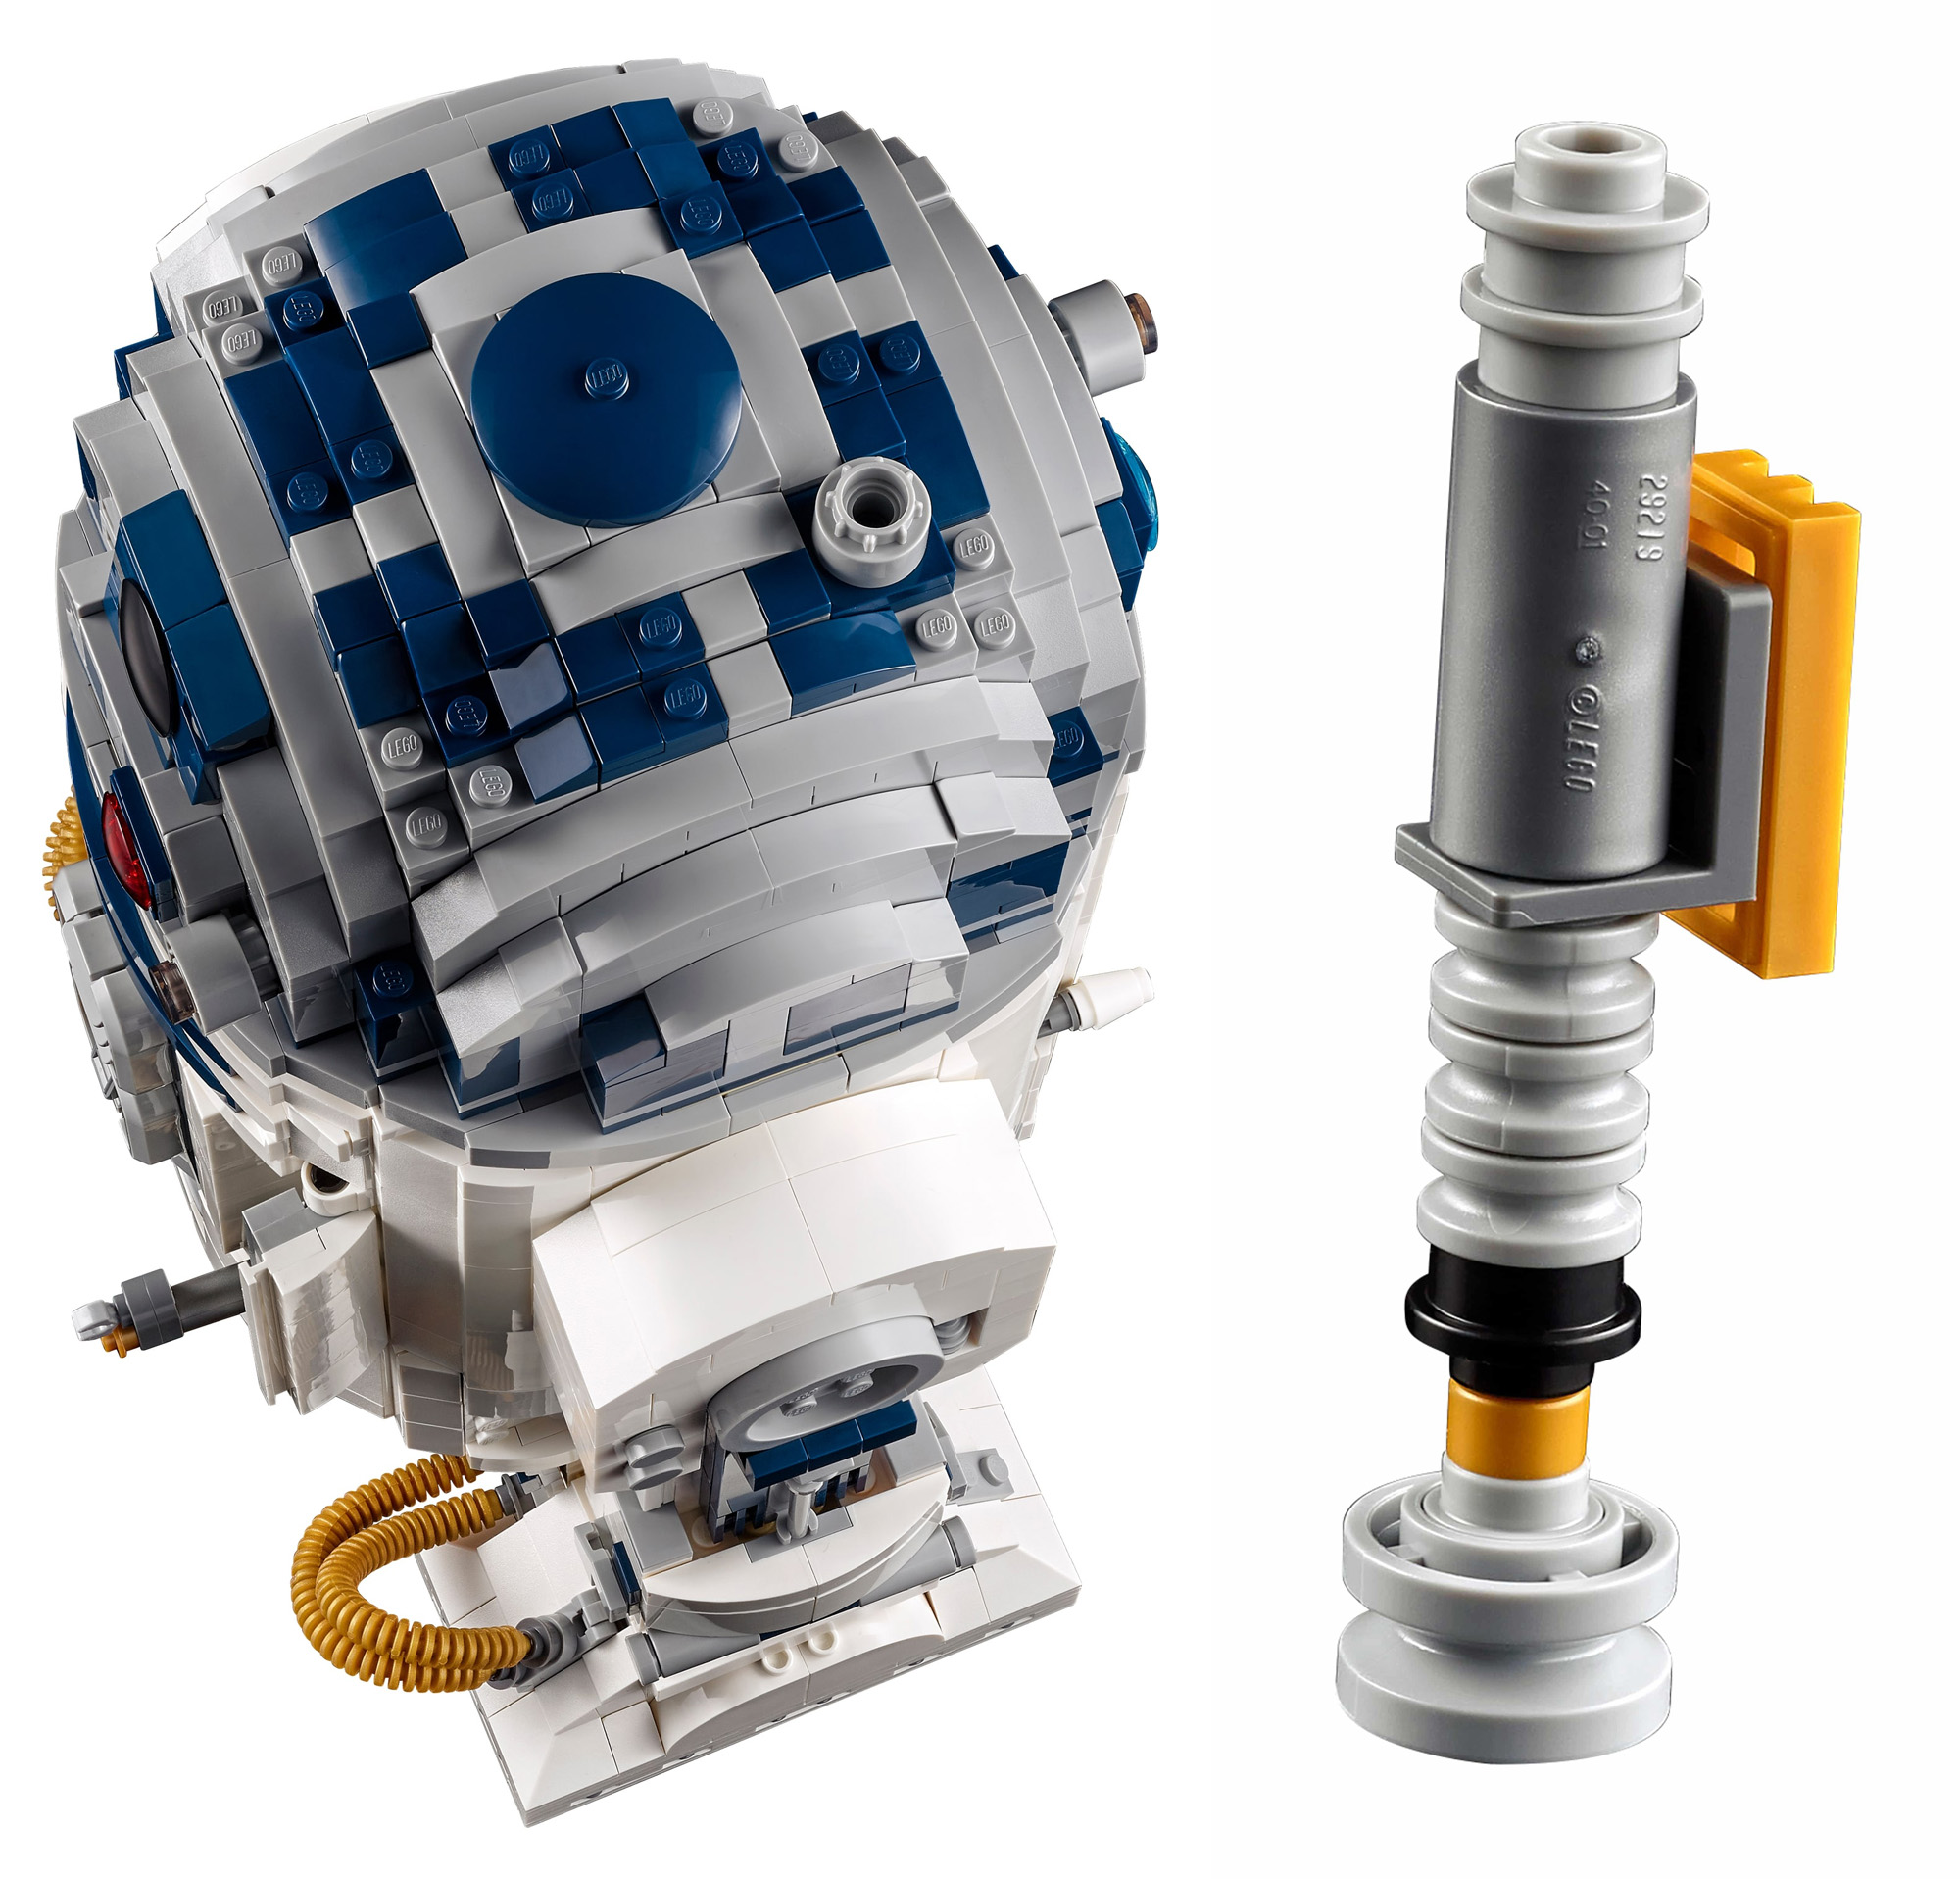 5月1日発売 R2 D2 Ucs大人のレゴスター ウォーズ新製品情報 21 スタッズ レゴの楽しさを伝えるwebメディア